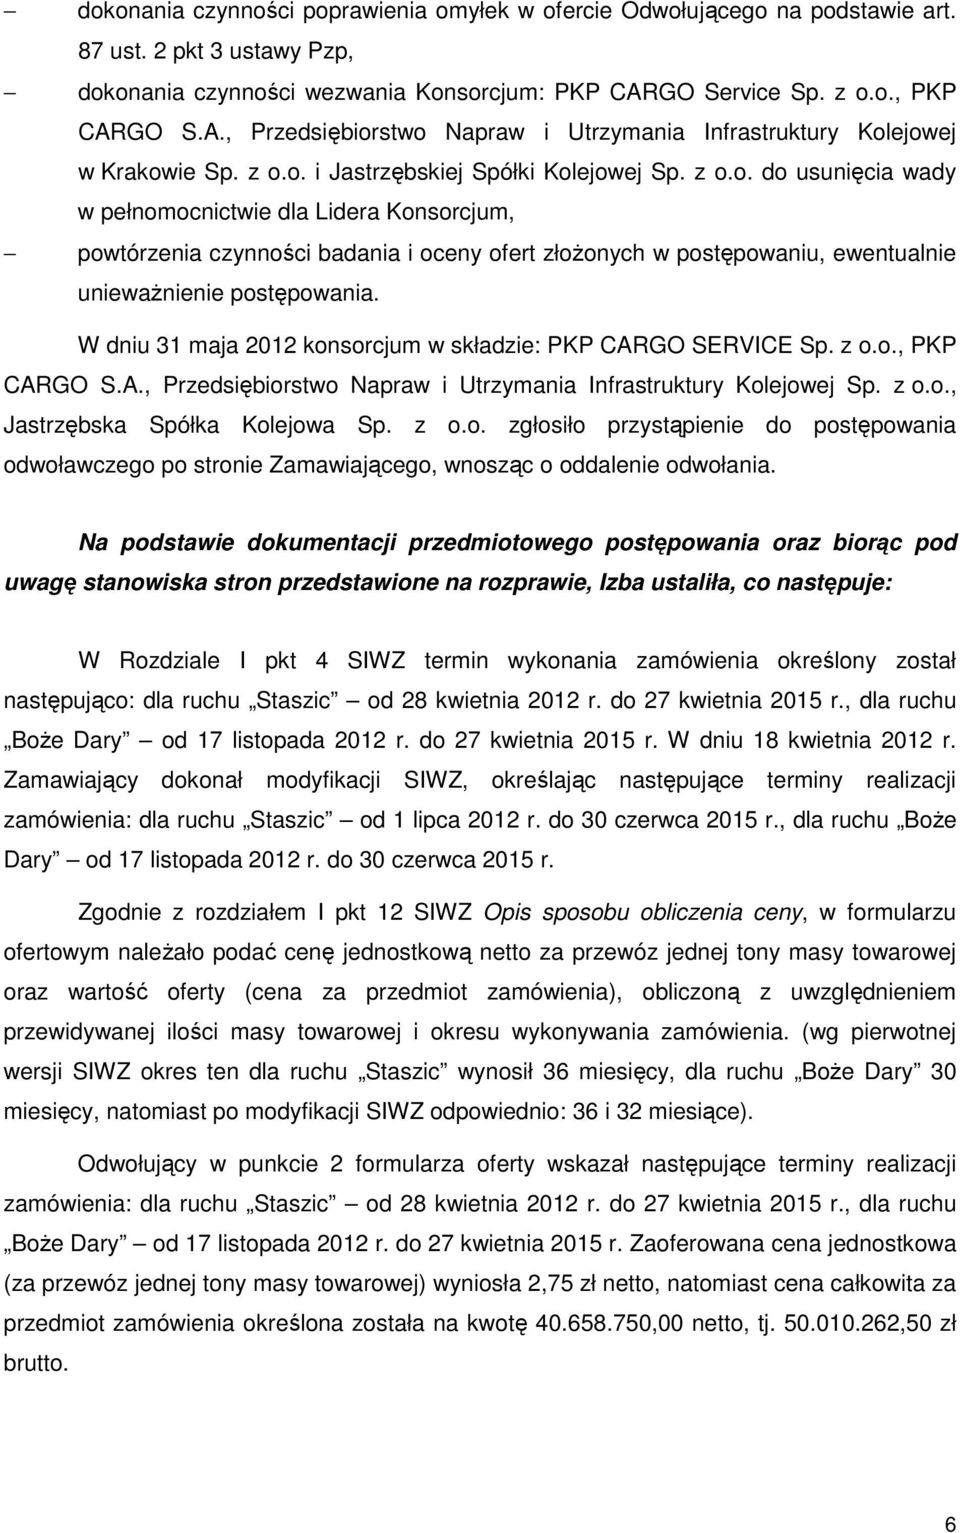 W dniu 31 maja 2012 konsorcjum w składzie: PKP CARGO SERVICE Sp. z o.o., PKP CARGO S.A., Przedsiębiorstwo Napraw i Utrzymania Infrastruktury Kolejowej Sp. z o.o., Jastrzębska Spółka Kolejowa Sp. z o.o. zgłosiło przystąpienie do postępowania odwoławczego po stronie Zamawiającego, wnosząc o oddalenie odwołania.